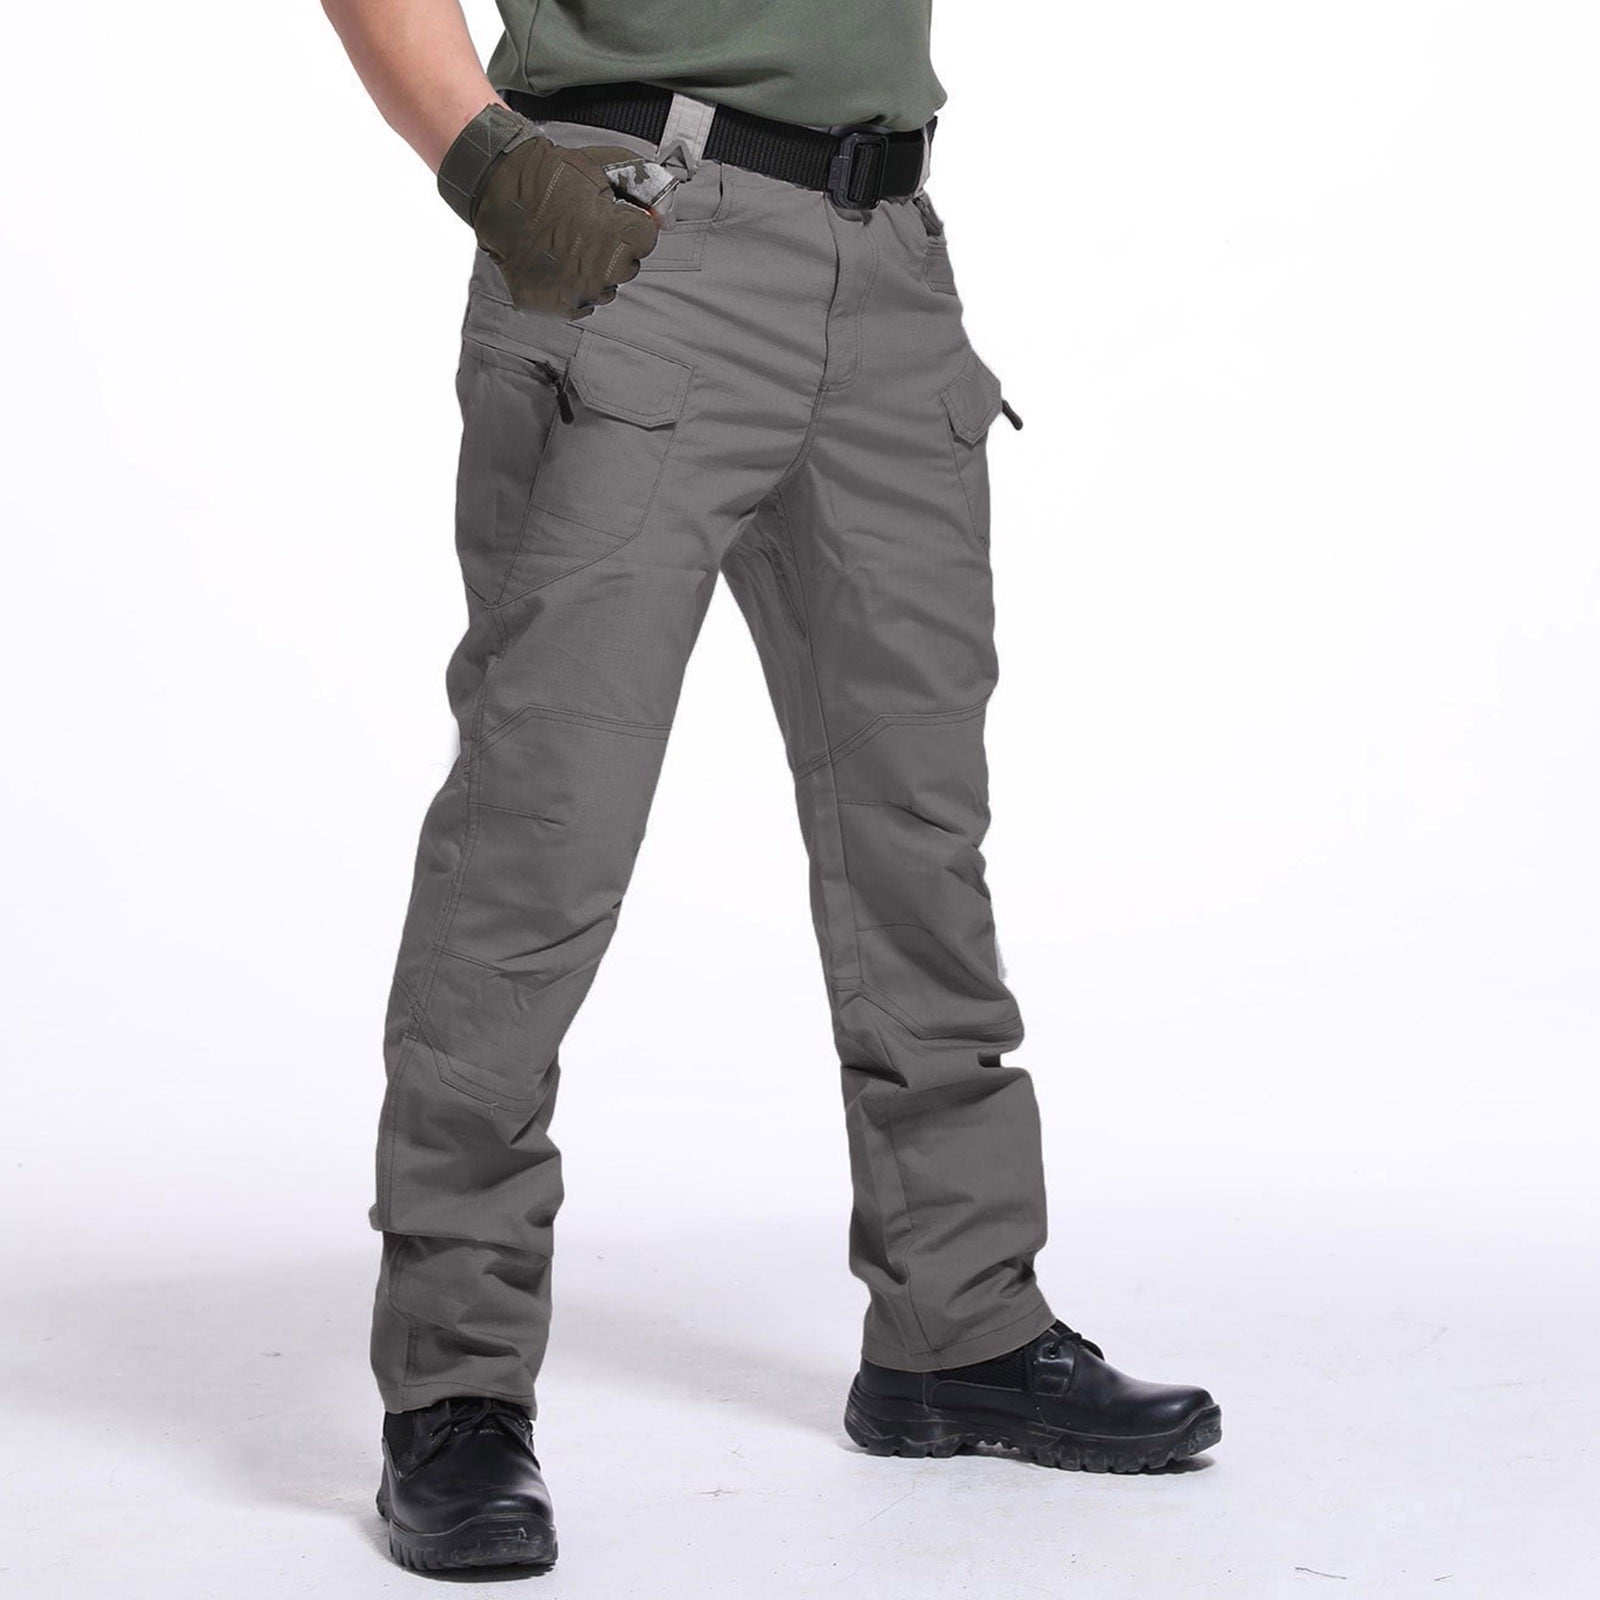 Men's Pants Multiple Pockets Cargo Trousers Work Wear Combat Cargo ...